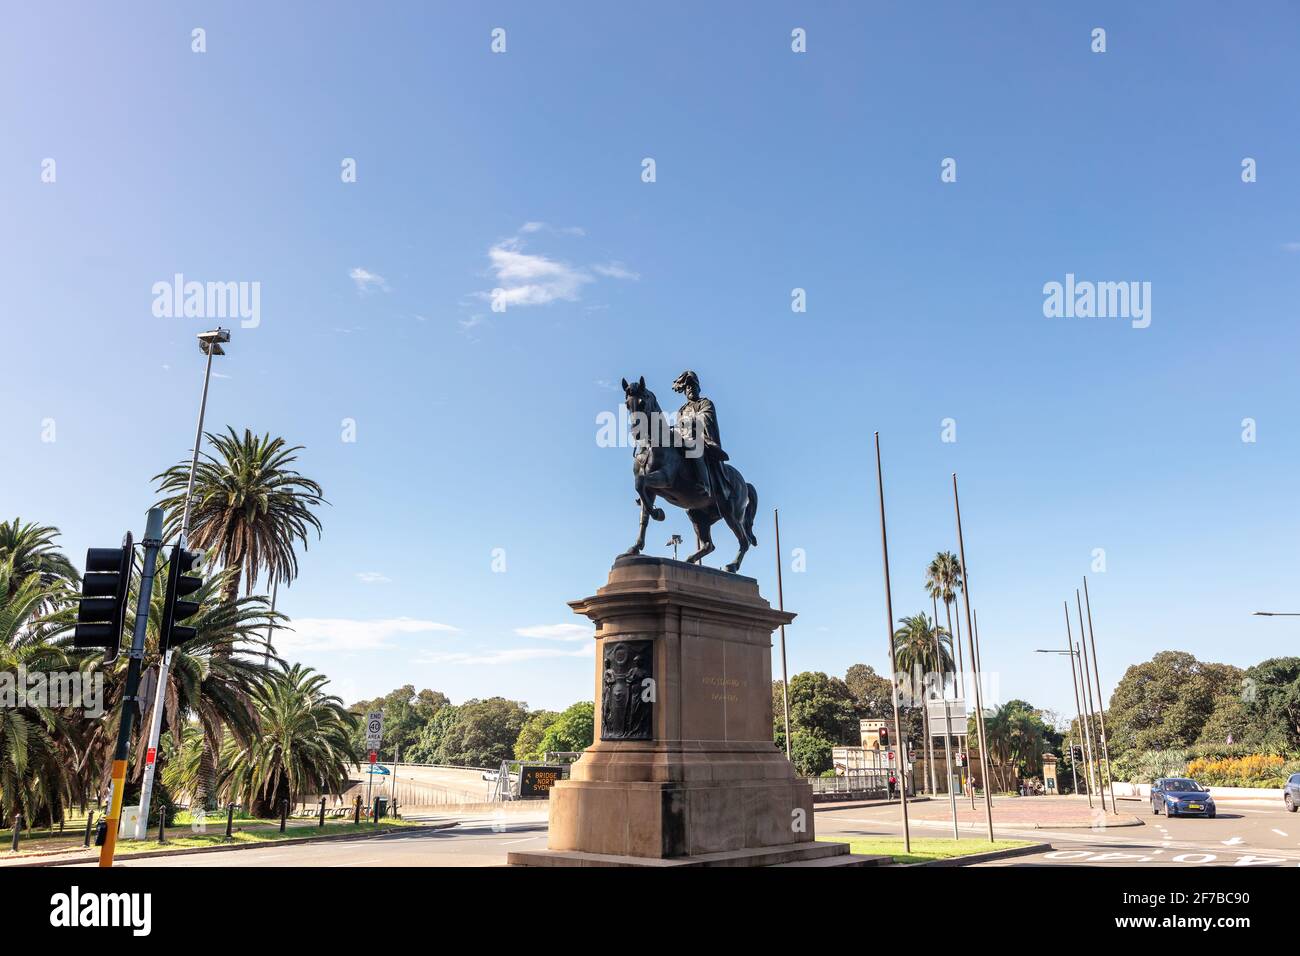 La grande statua equestre in bronzo di Thomas Brock sul piedistallo trachitico e la base commemora il Re Edoardo VII nel centro di Sydney. Australia. Foto Stock